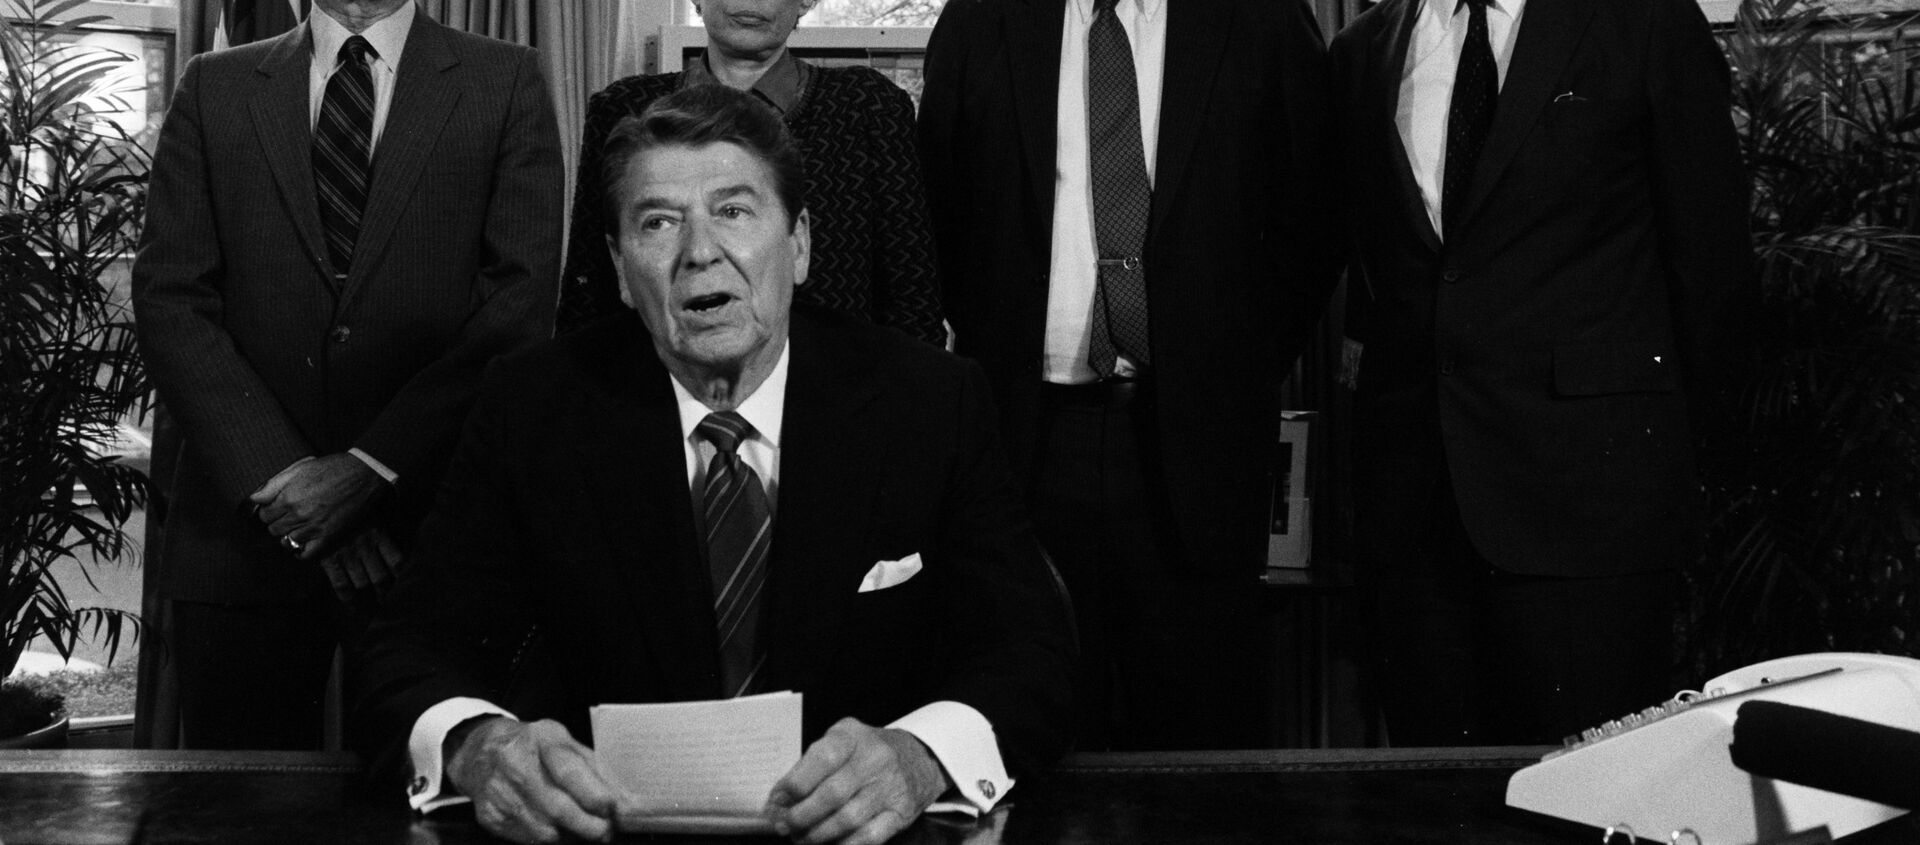 El presidente Ronald Reagan en un encuentro en la Casa Blanca con los líderes conservadores de la defensa (archivo) - Sputnik Mundo, 1920, 18.01.2021